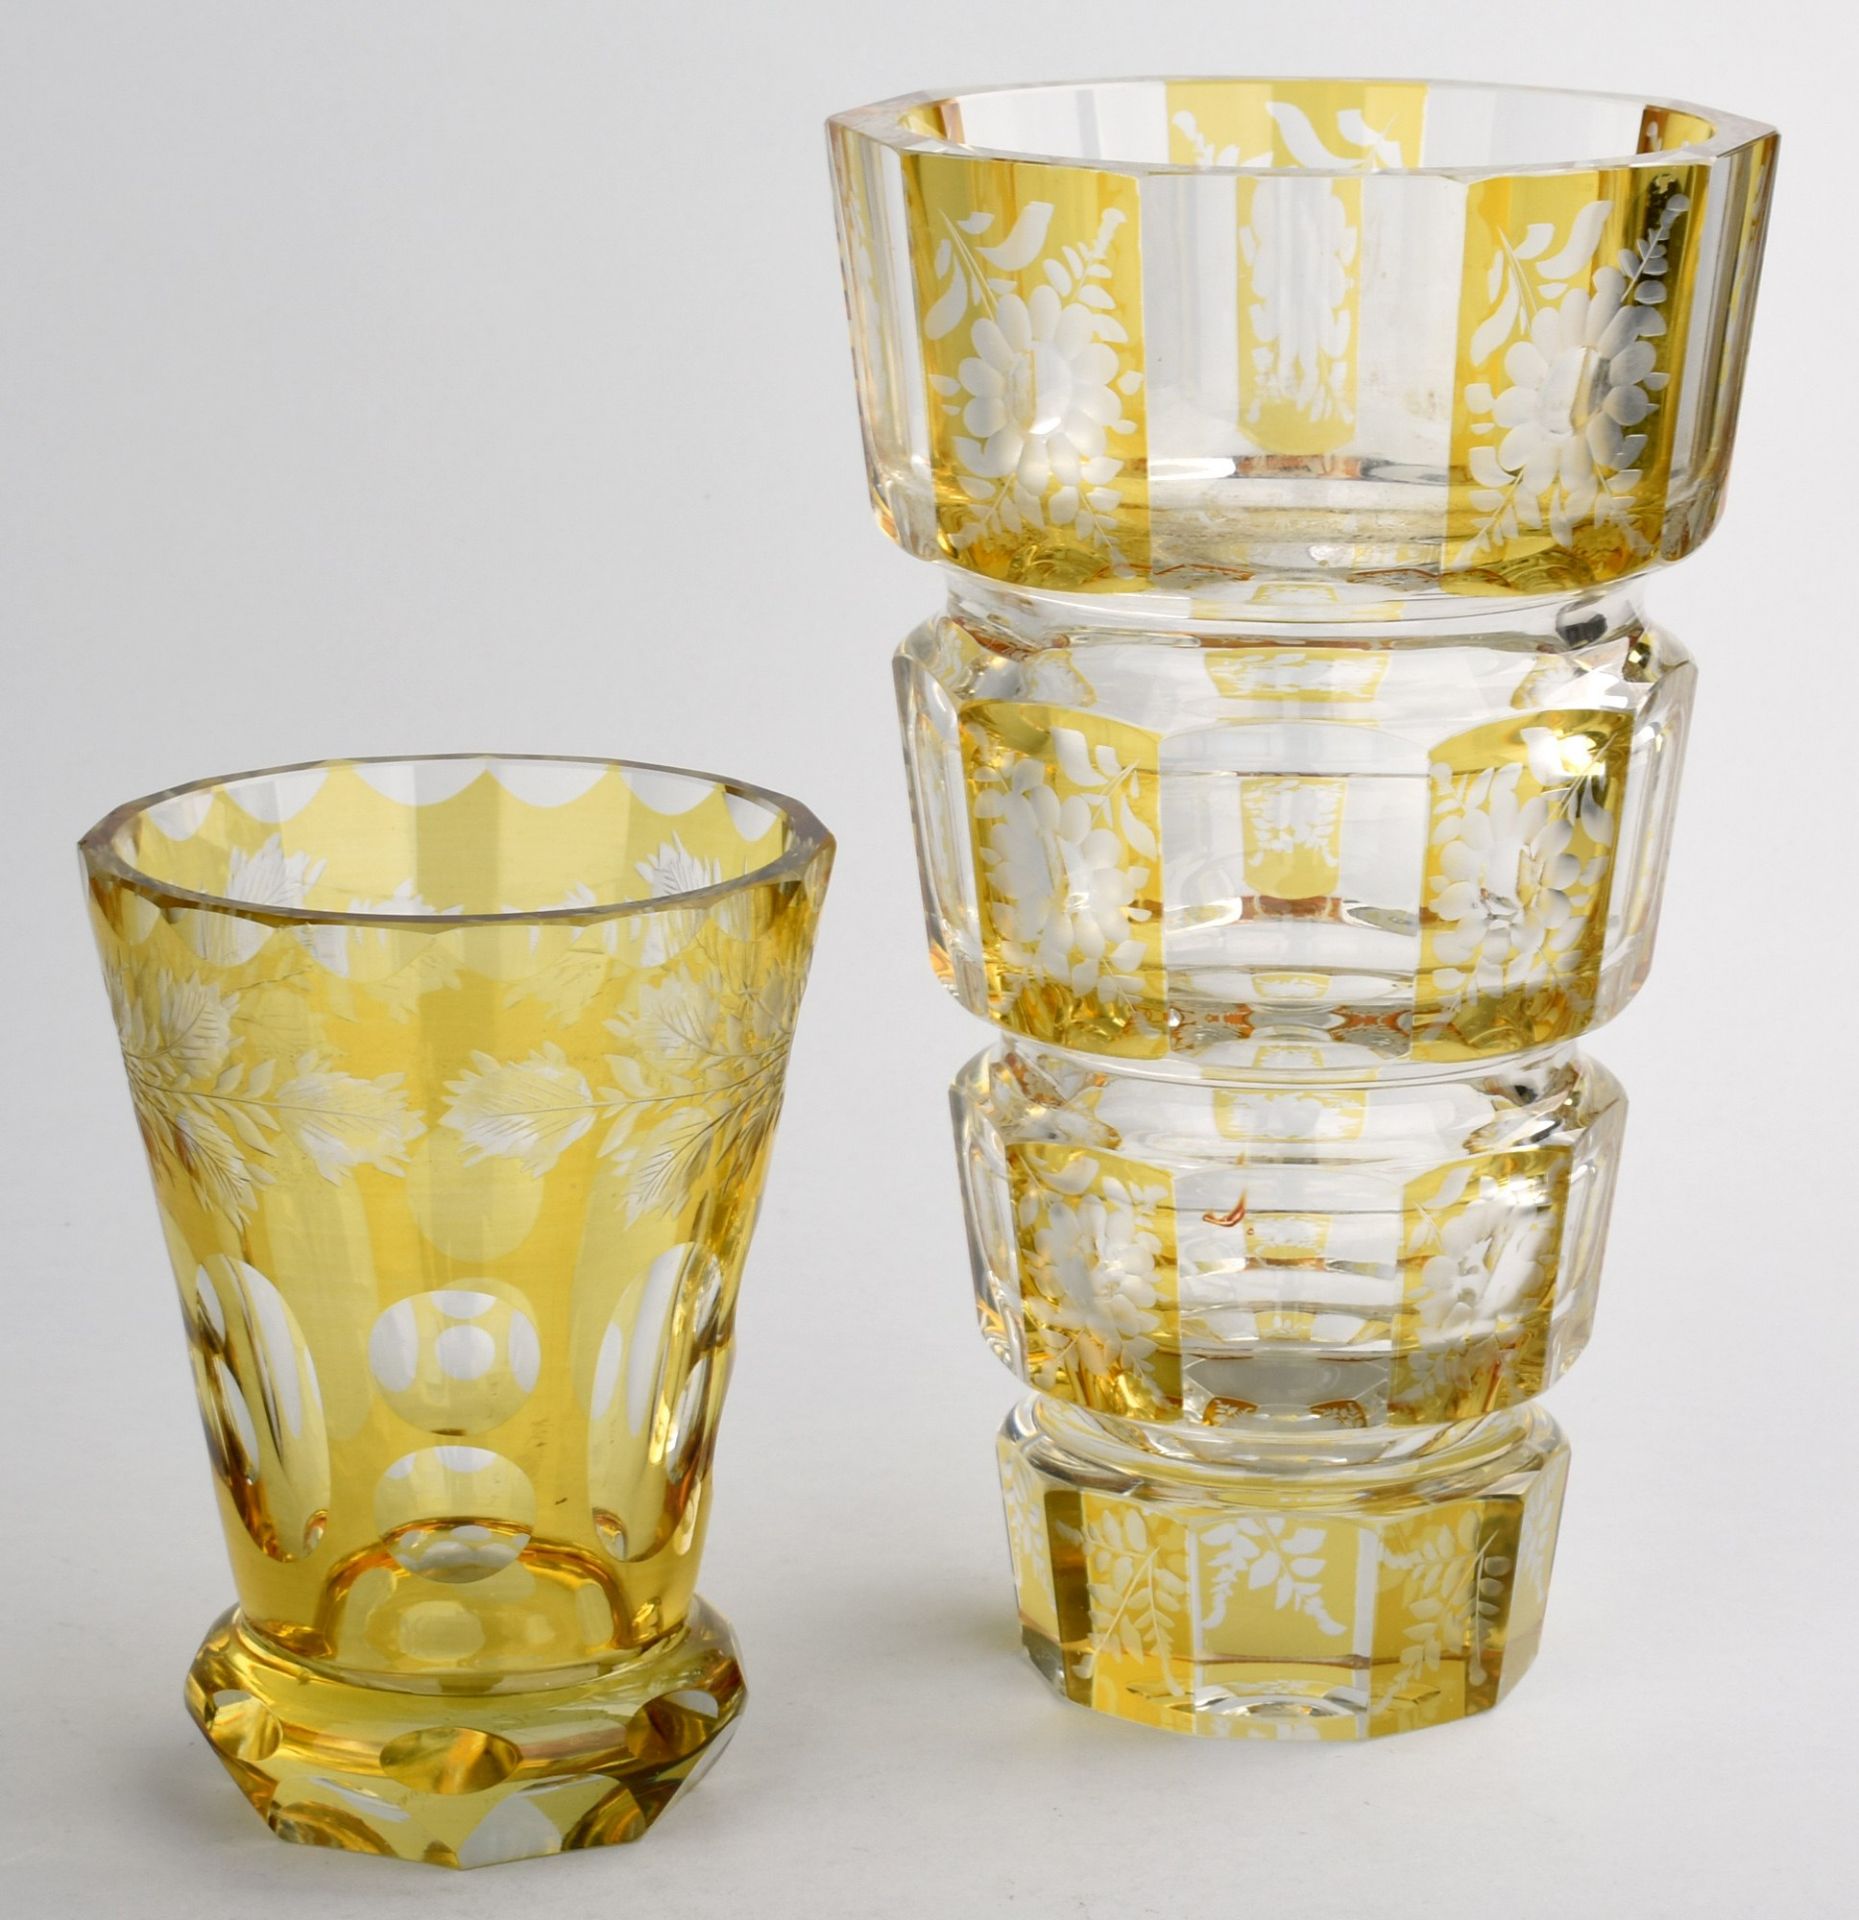 Zwei Kristallvasen untersch. Trichterformen mit flachem bzw. wulstigem Stand, farbloses Kristall - Bild 2 aus 2